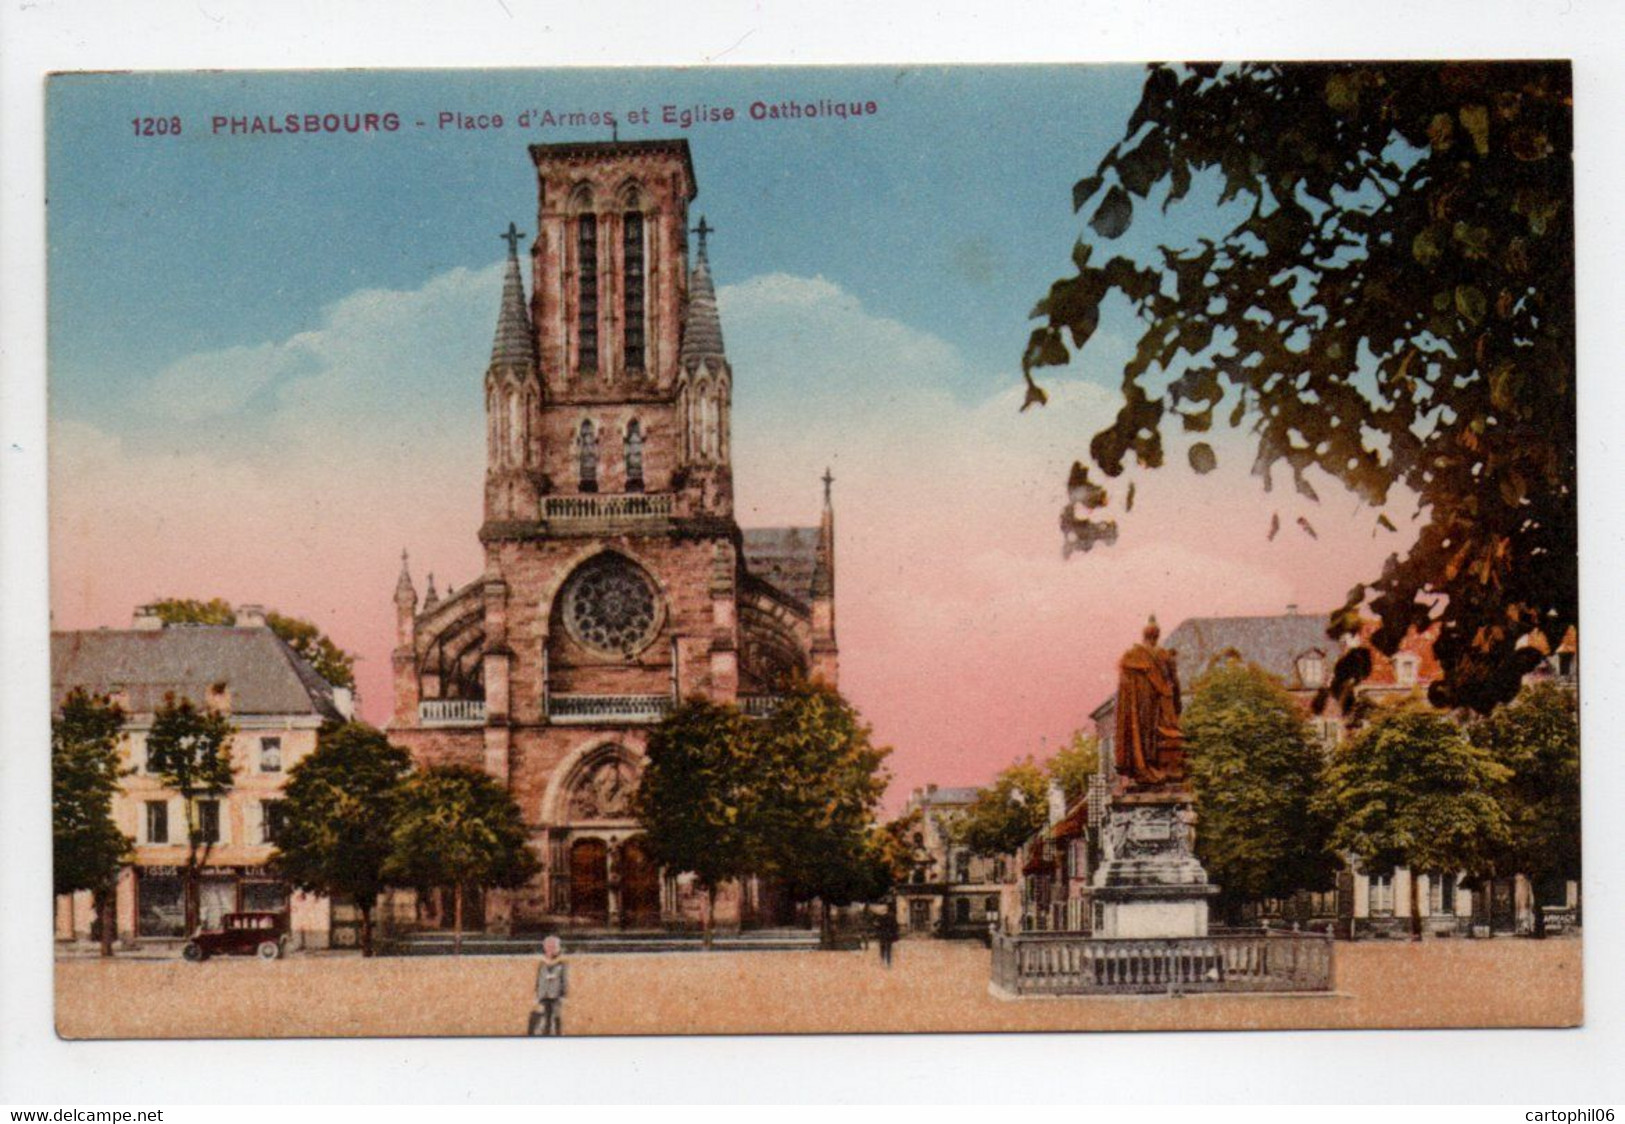 - CPA PHALSBOURG (57) - Place D'Armes Et Eglise Catholique - Edition Knecht 1208 - - Phalsbourg